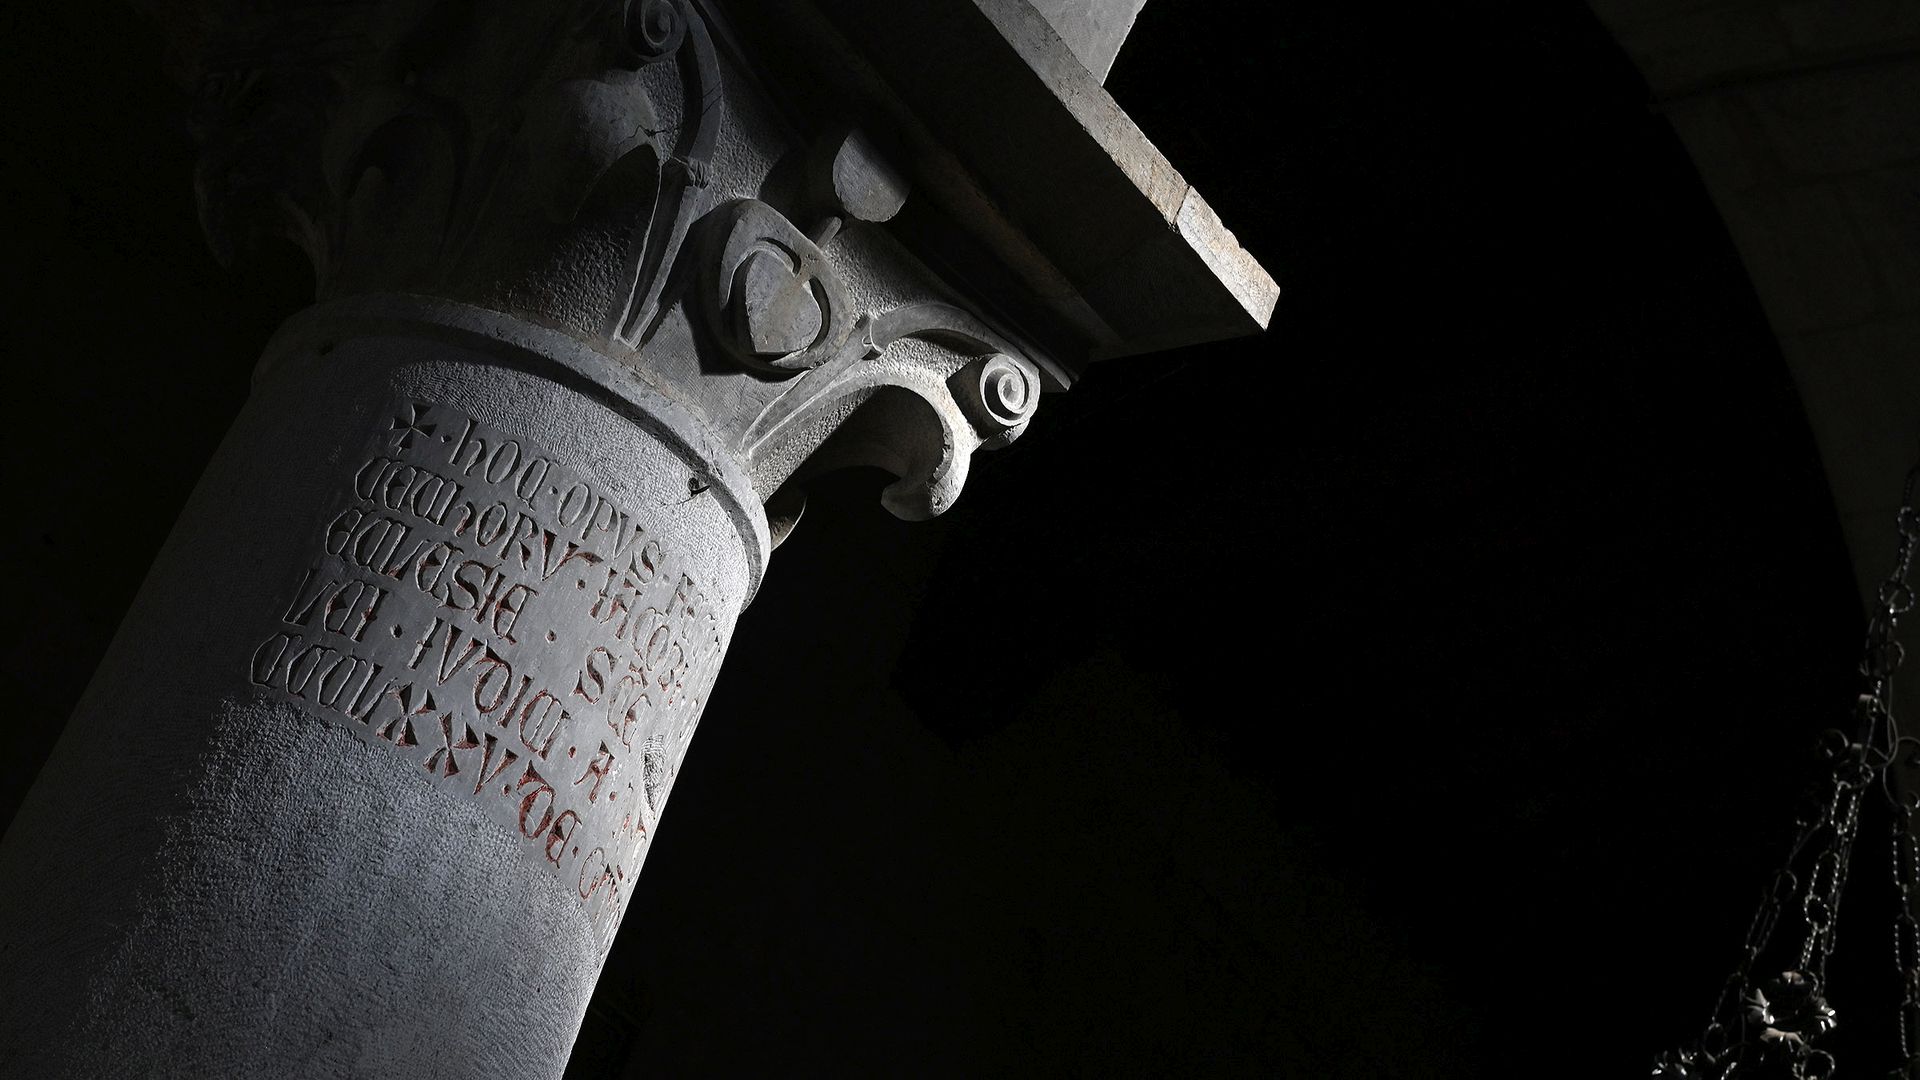 inscription sur un chapiteau de l'église paroissiale de santa maria del giudice à lucca